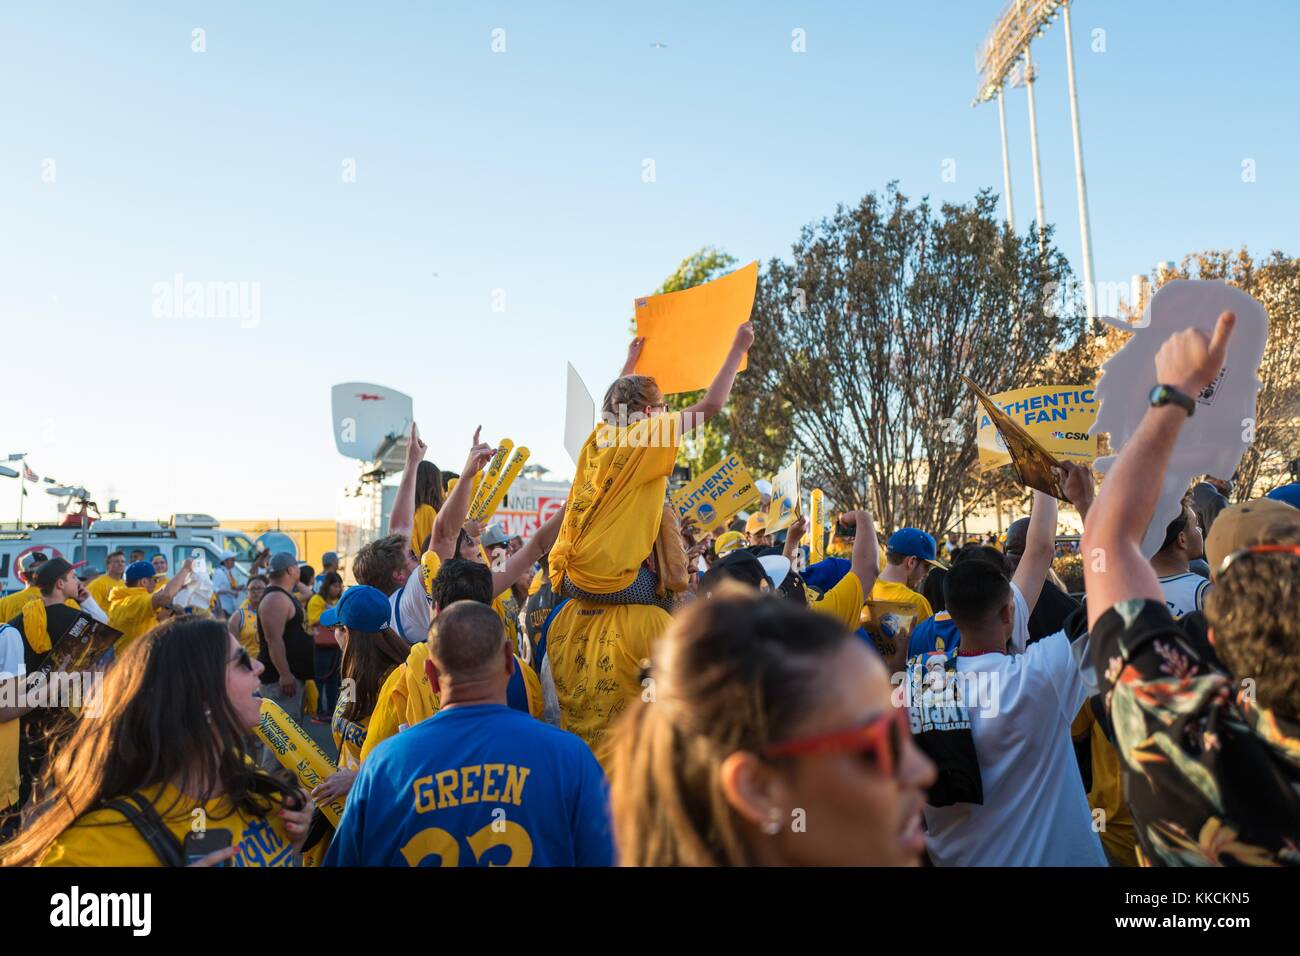 Dopo le finali di Game 2 della National Basketball Association (NBA) tra i Golden state Warriors e i Cleveland Cavaliers, i fan dei Warriors si levano in mano, fanno gesti e celebrano la vittoria della loro squadra, Oakland, California, 5 giugno 2016. Foto Stock